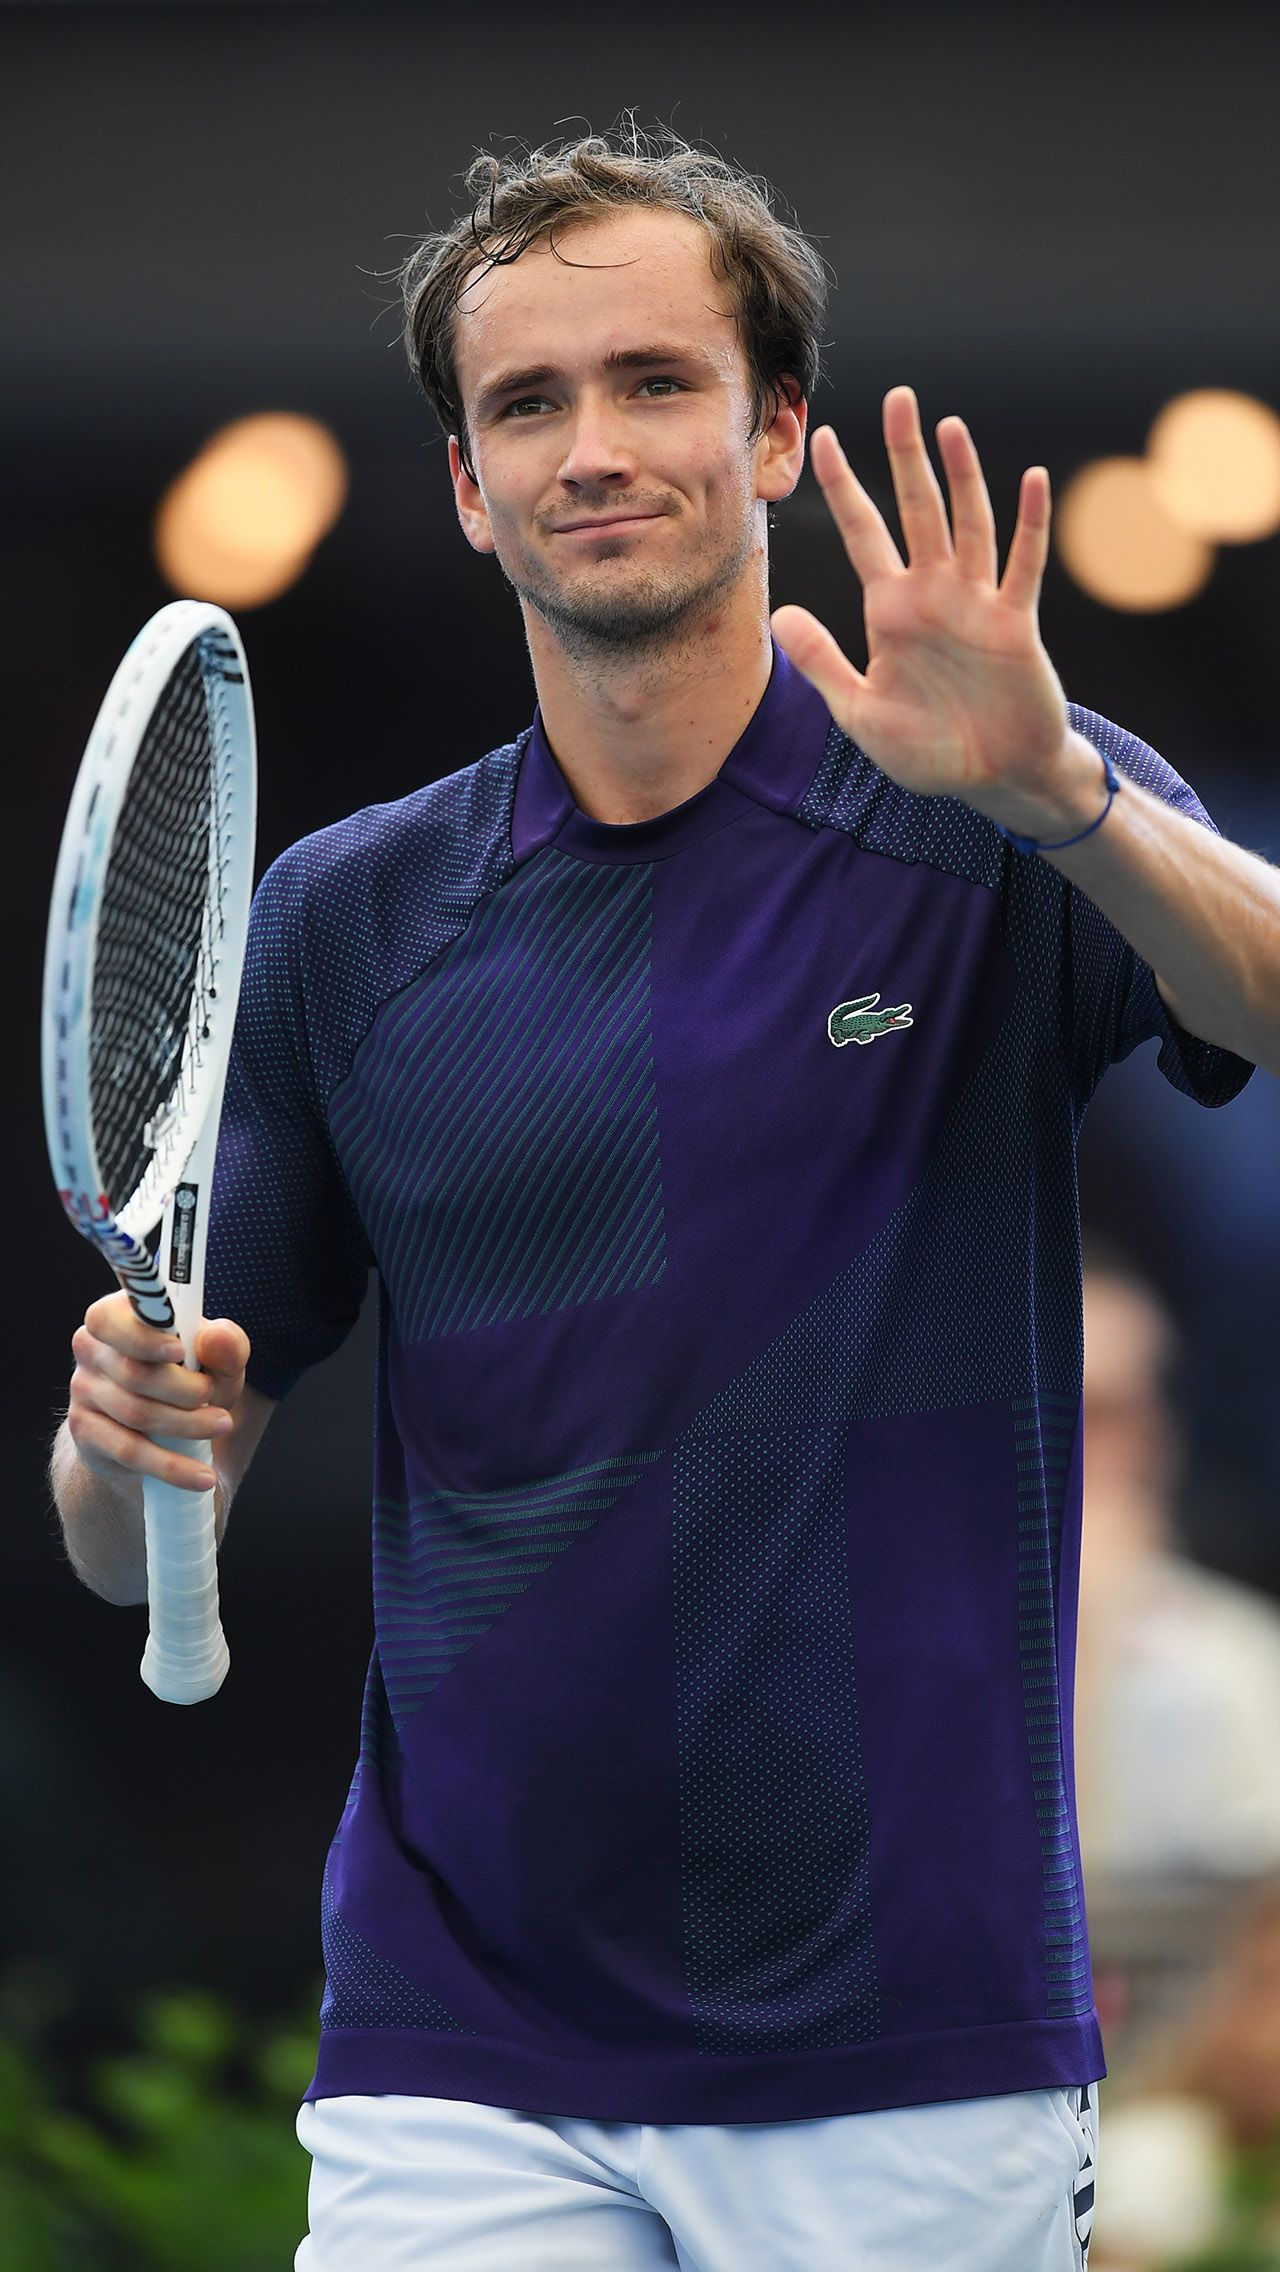 Однако последний проигрыш Даниила сербу Джоковичу в полуфинале турнира ATP-250 в Аделаиде лишил Медведева возможности остаться первым среди россиян. Впервые с лета 2019 года он опустился на второе место.